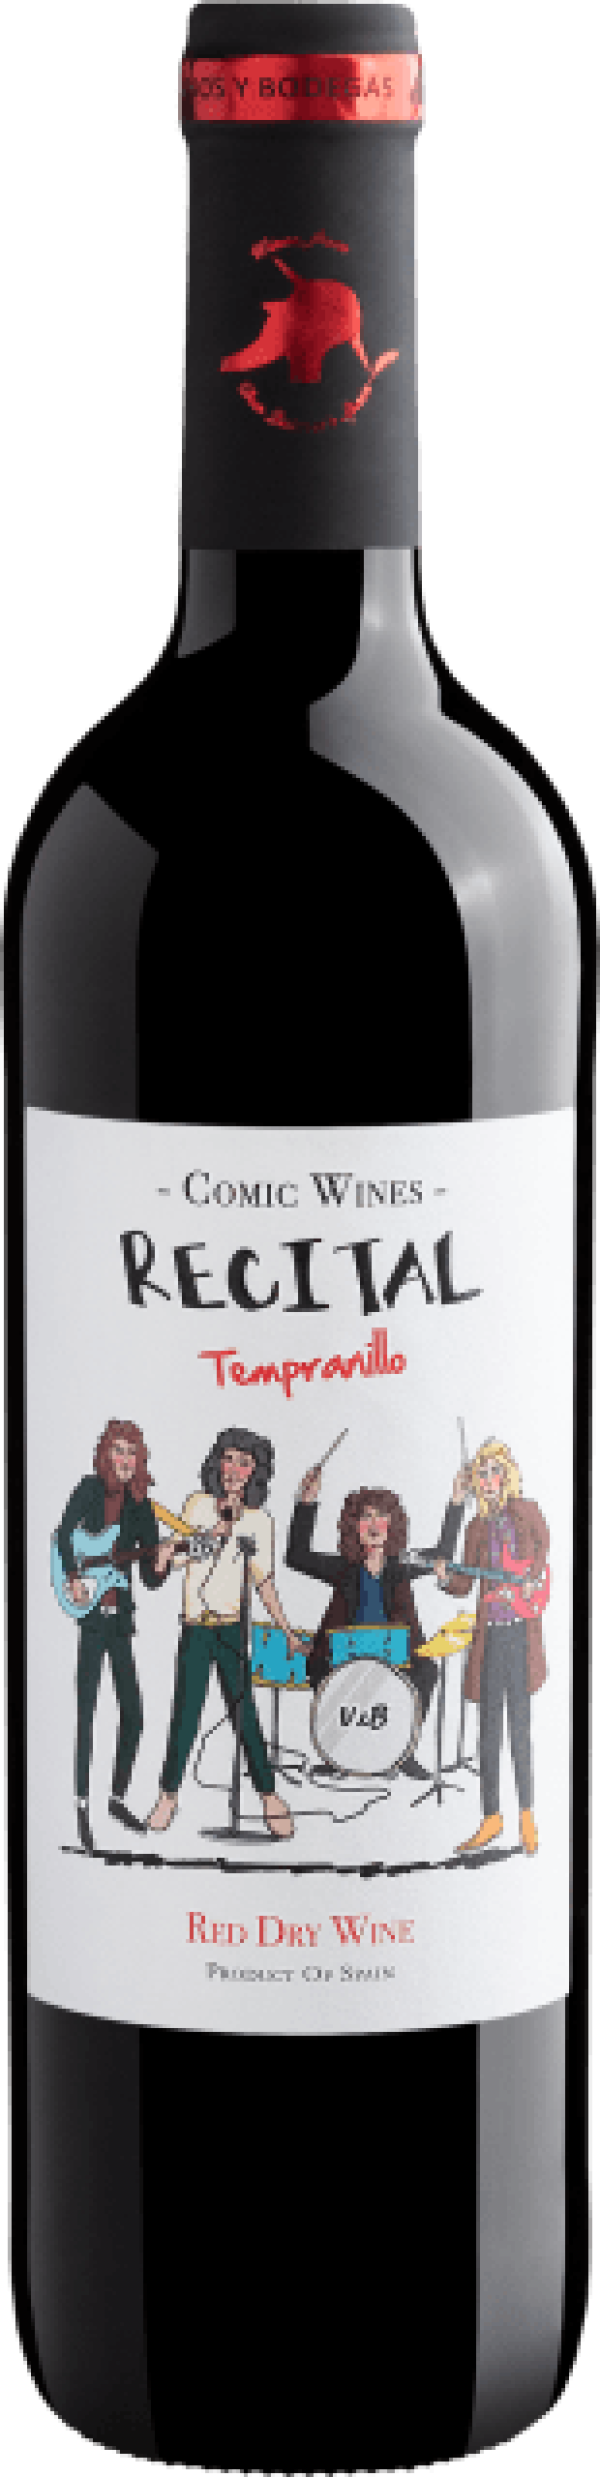 Recital Tempranillo Red Dry Wine 2020